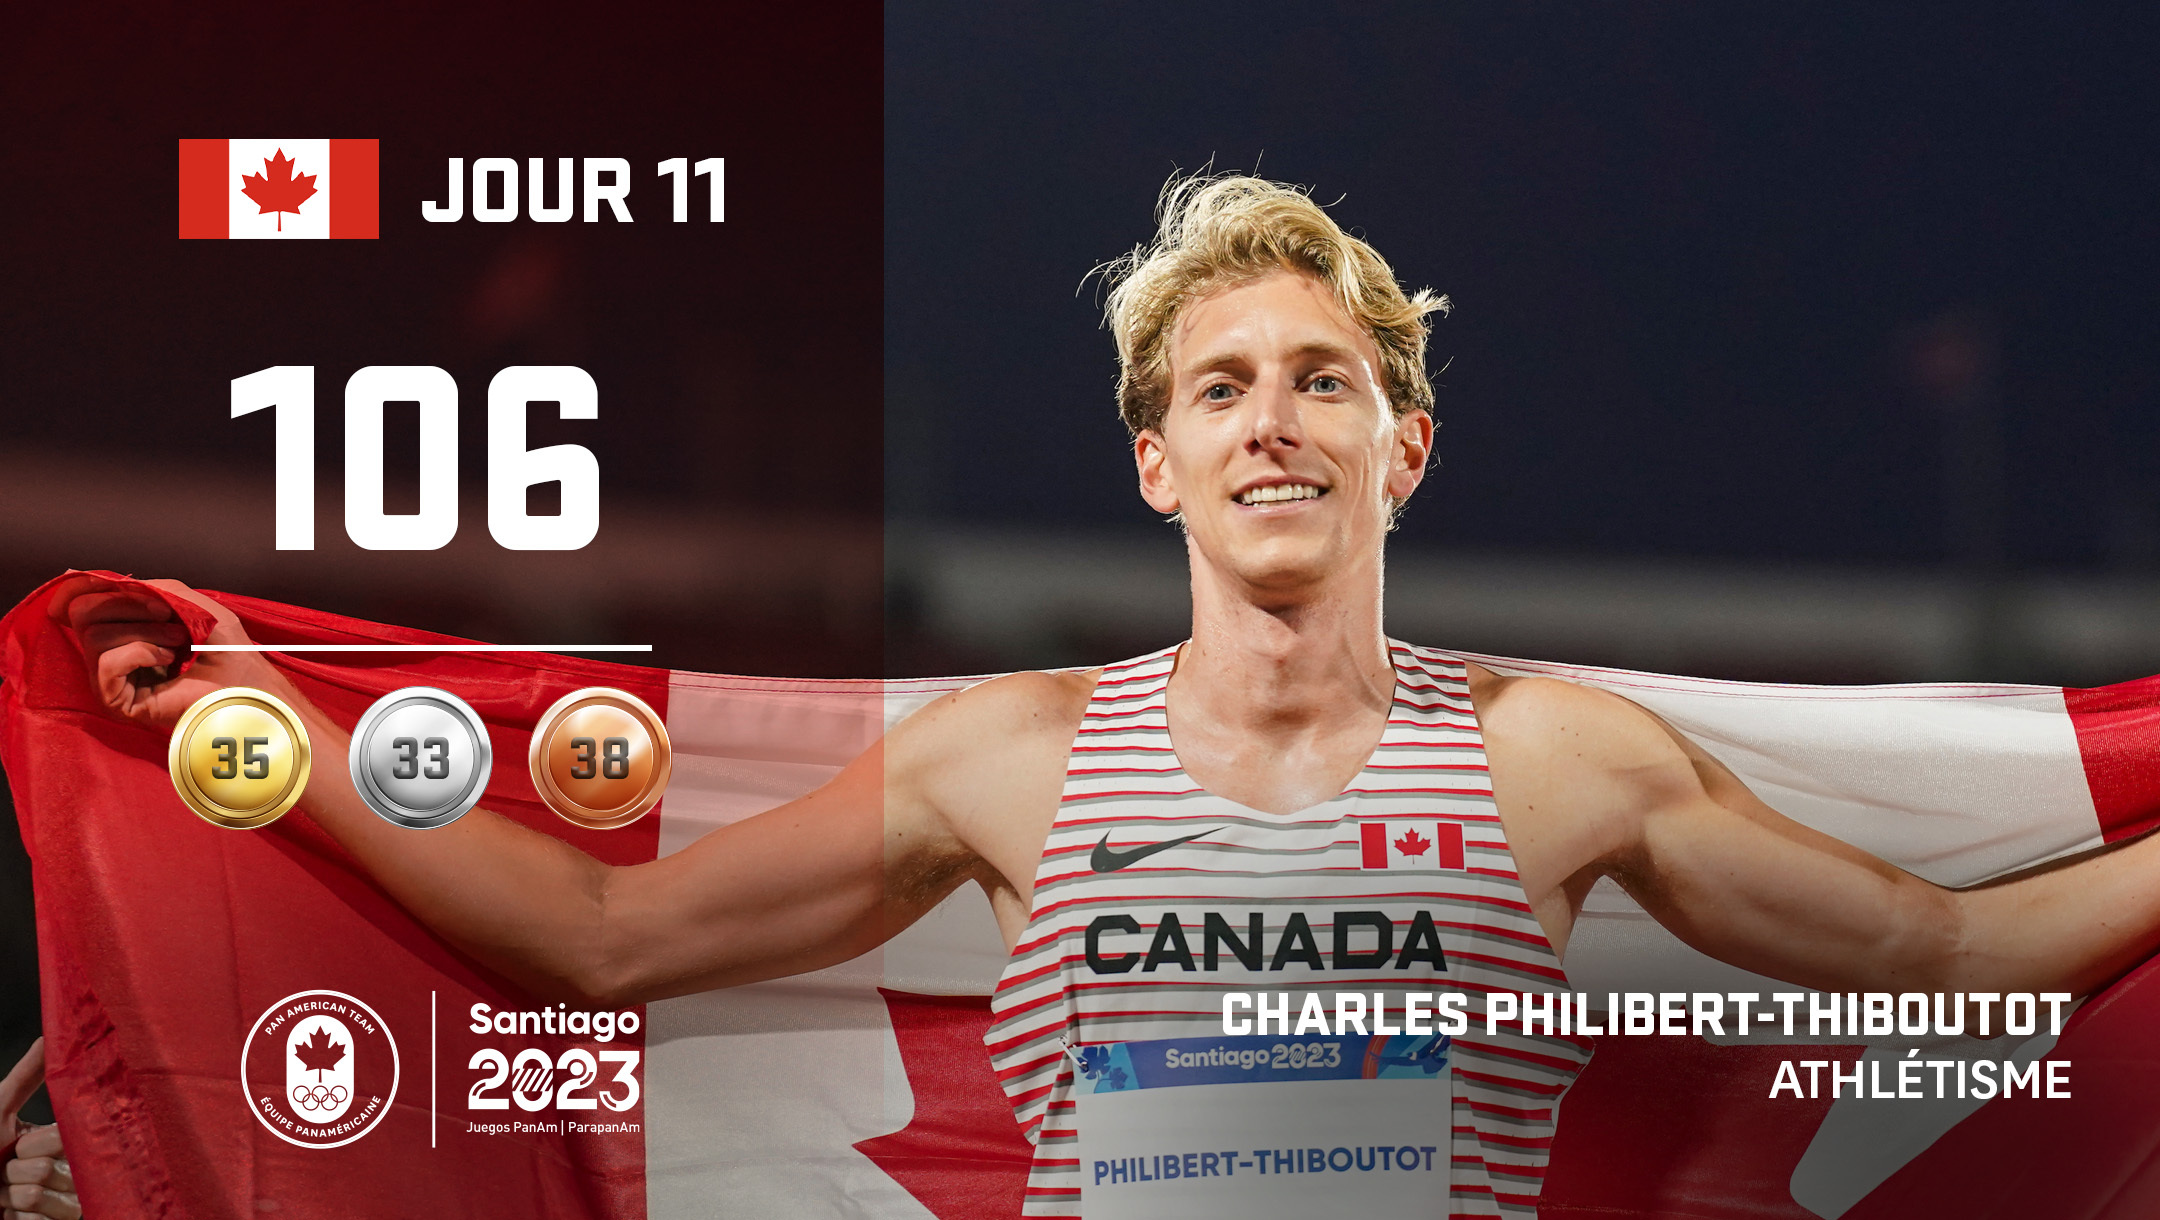 Dia 11 em Santiago de 2023: Philibert-Thiboutot ganha prata e Canadá conquista mais medalhas – Team Canada